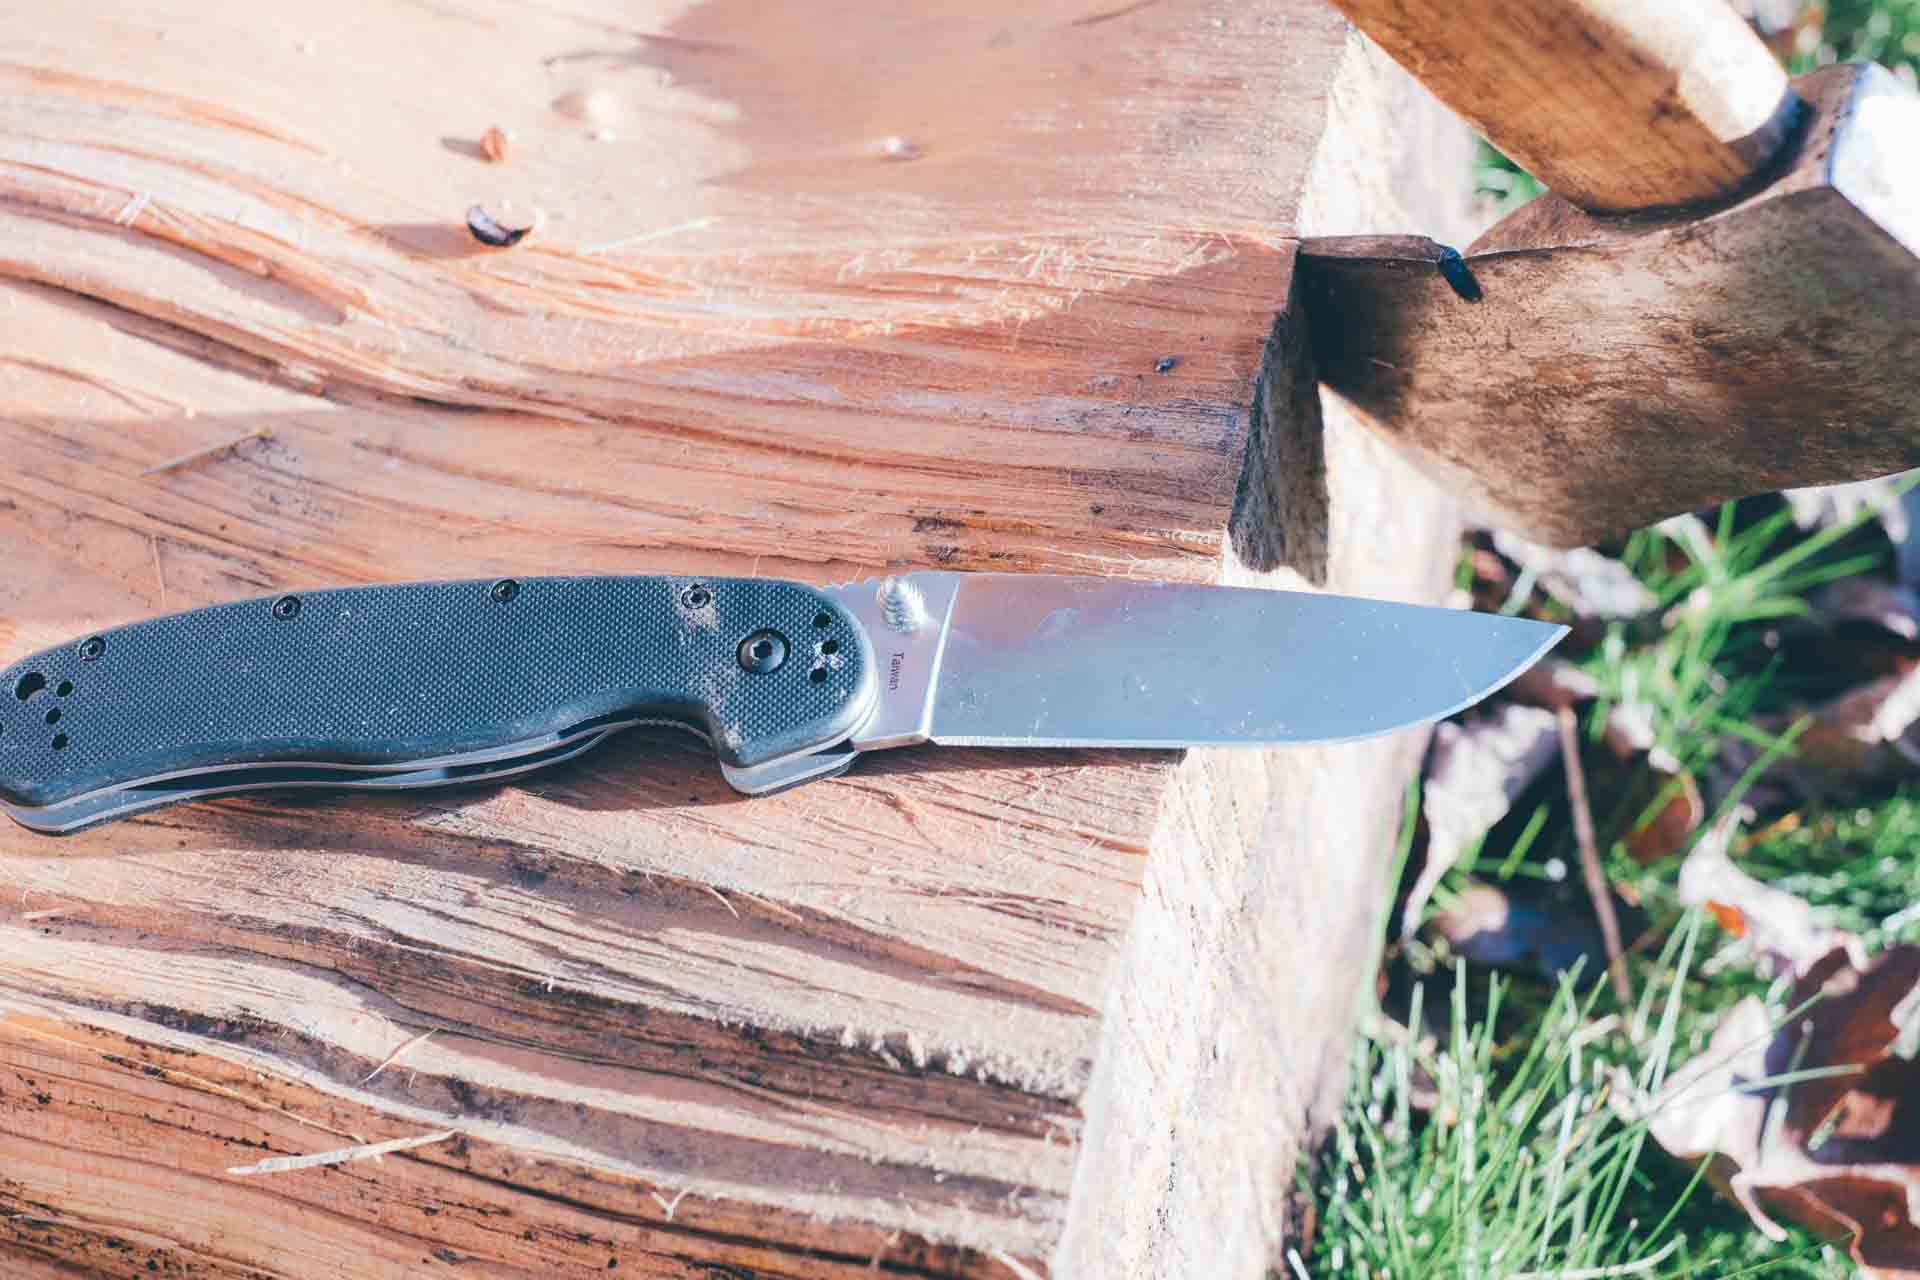 Ontario Knives' RAT-1 pocket knife. ($28)